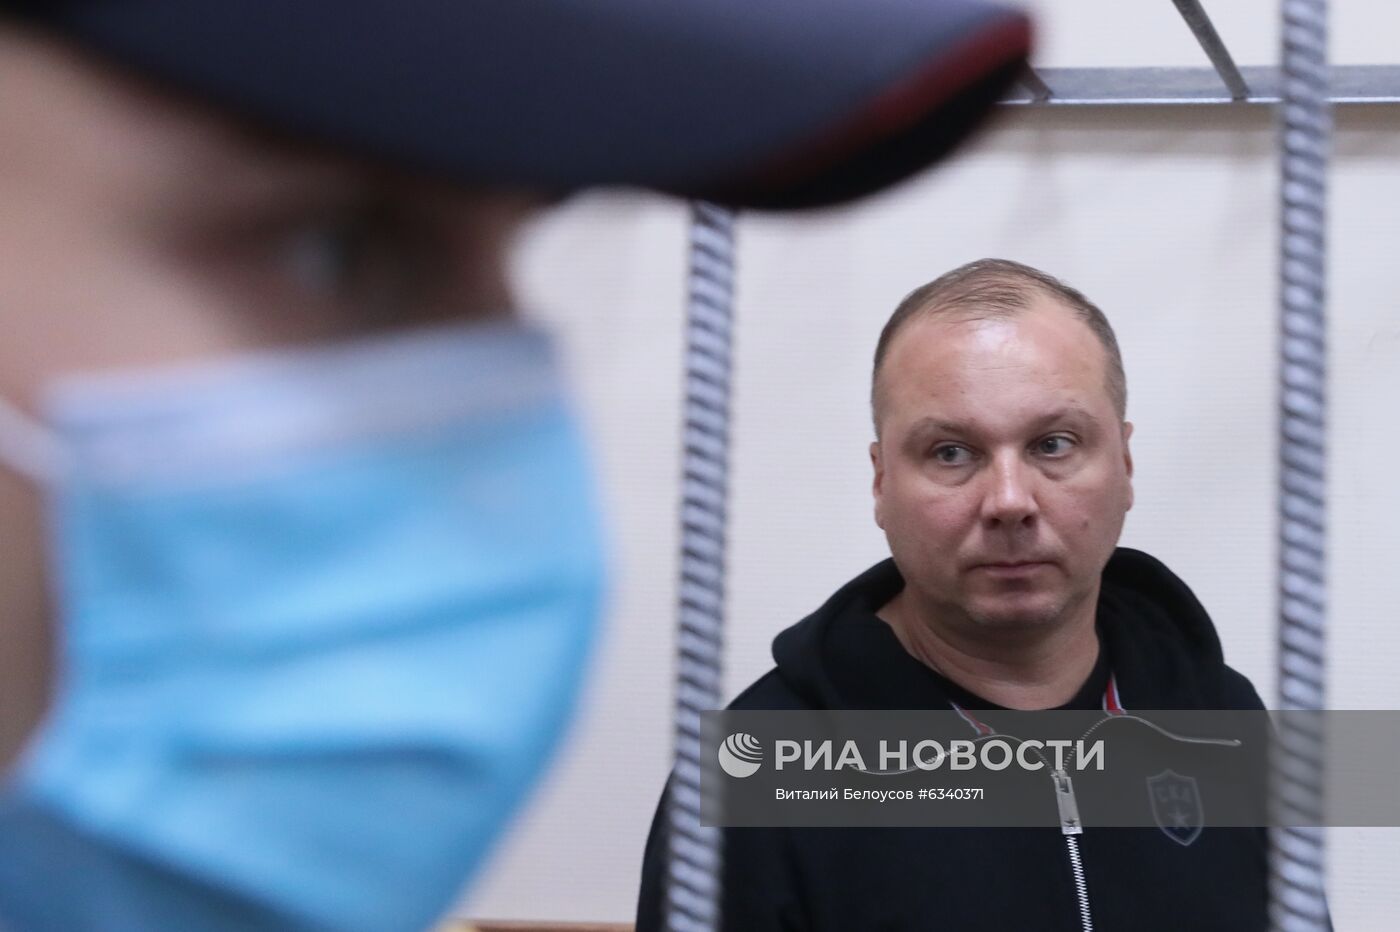 Избрание меры пресечения обвиняемым в хищениях при реставрации Санкт-Петербургской консерватории